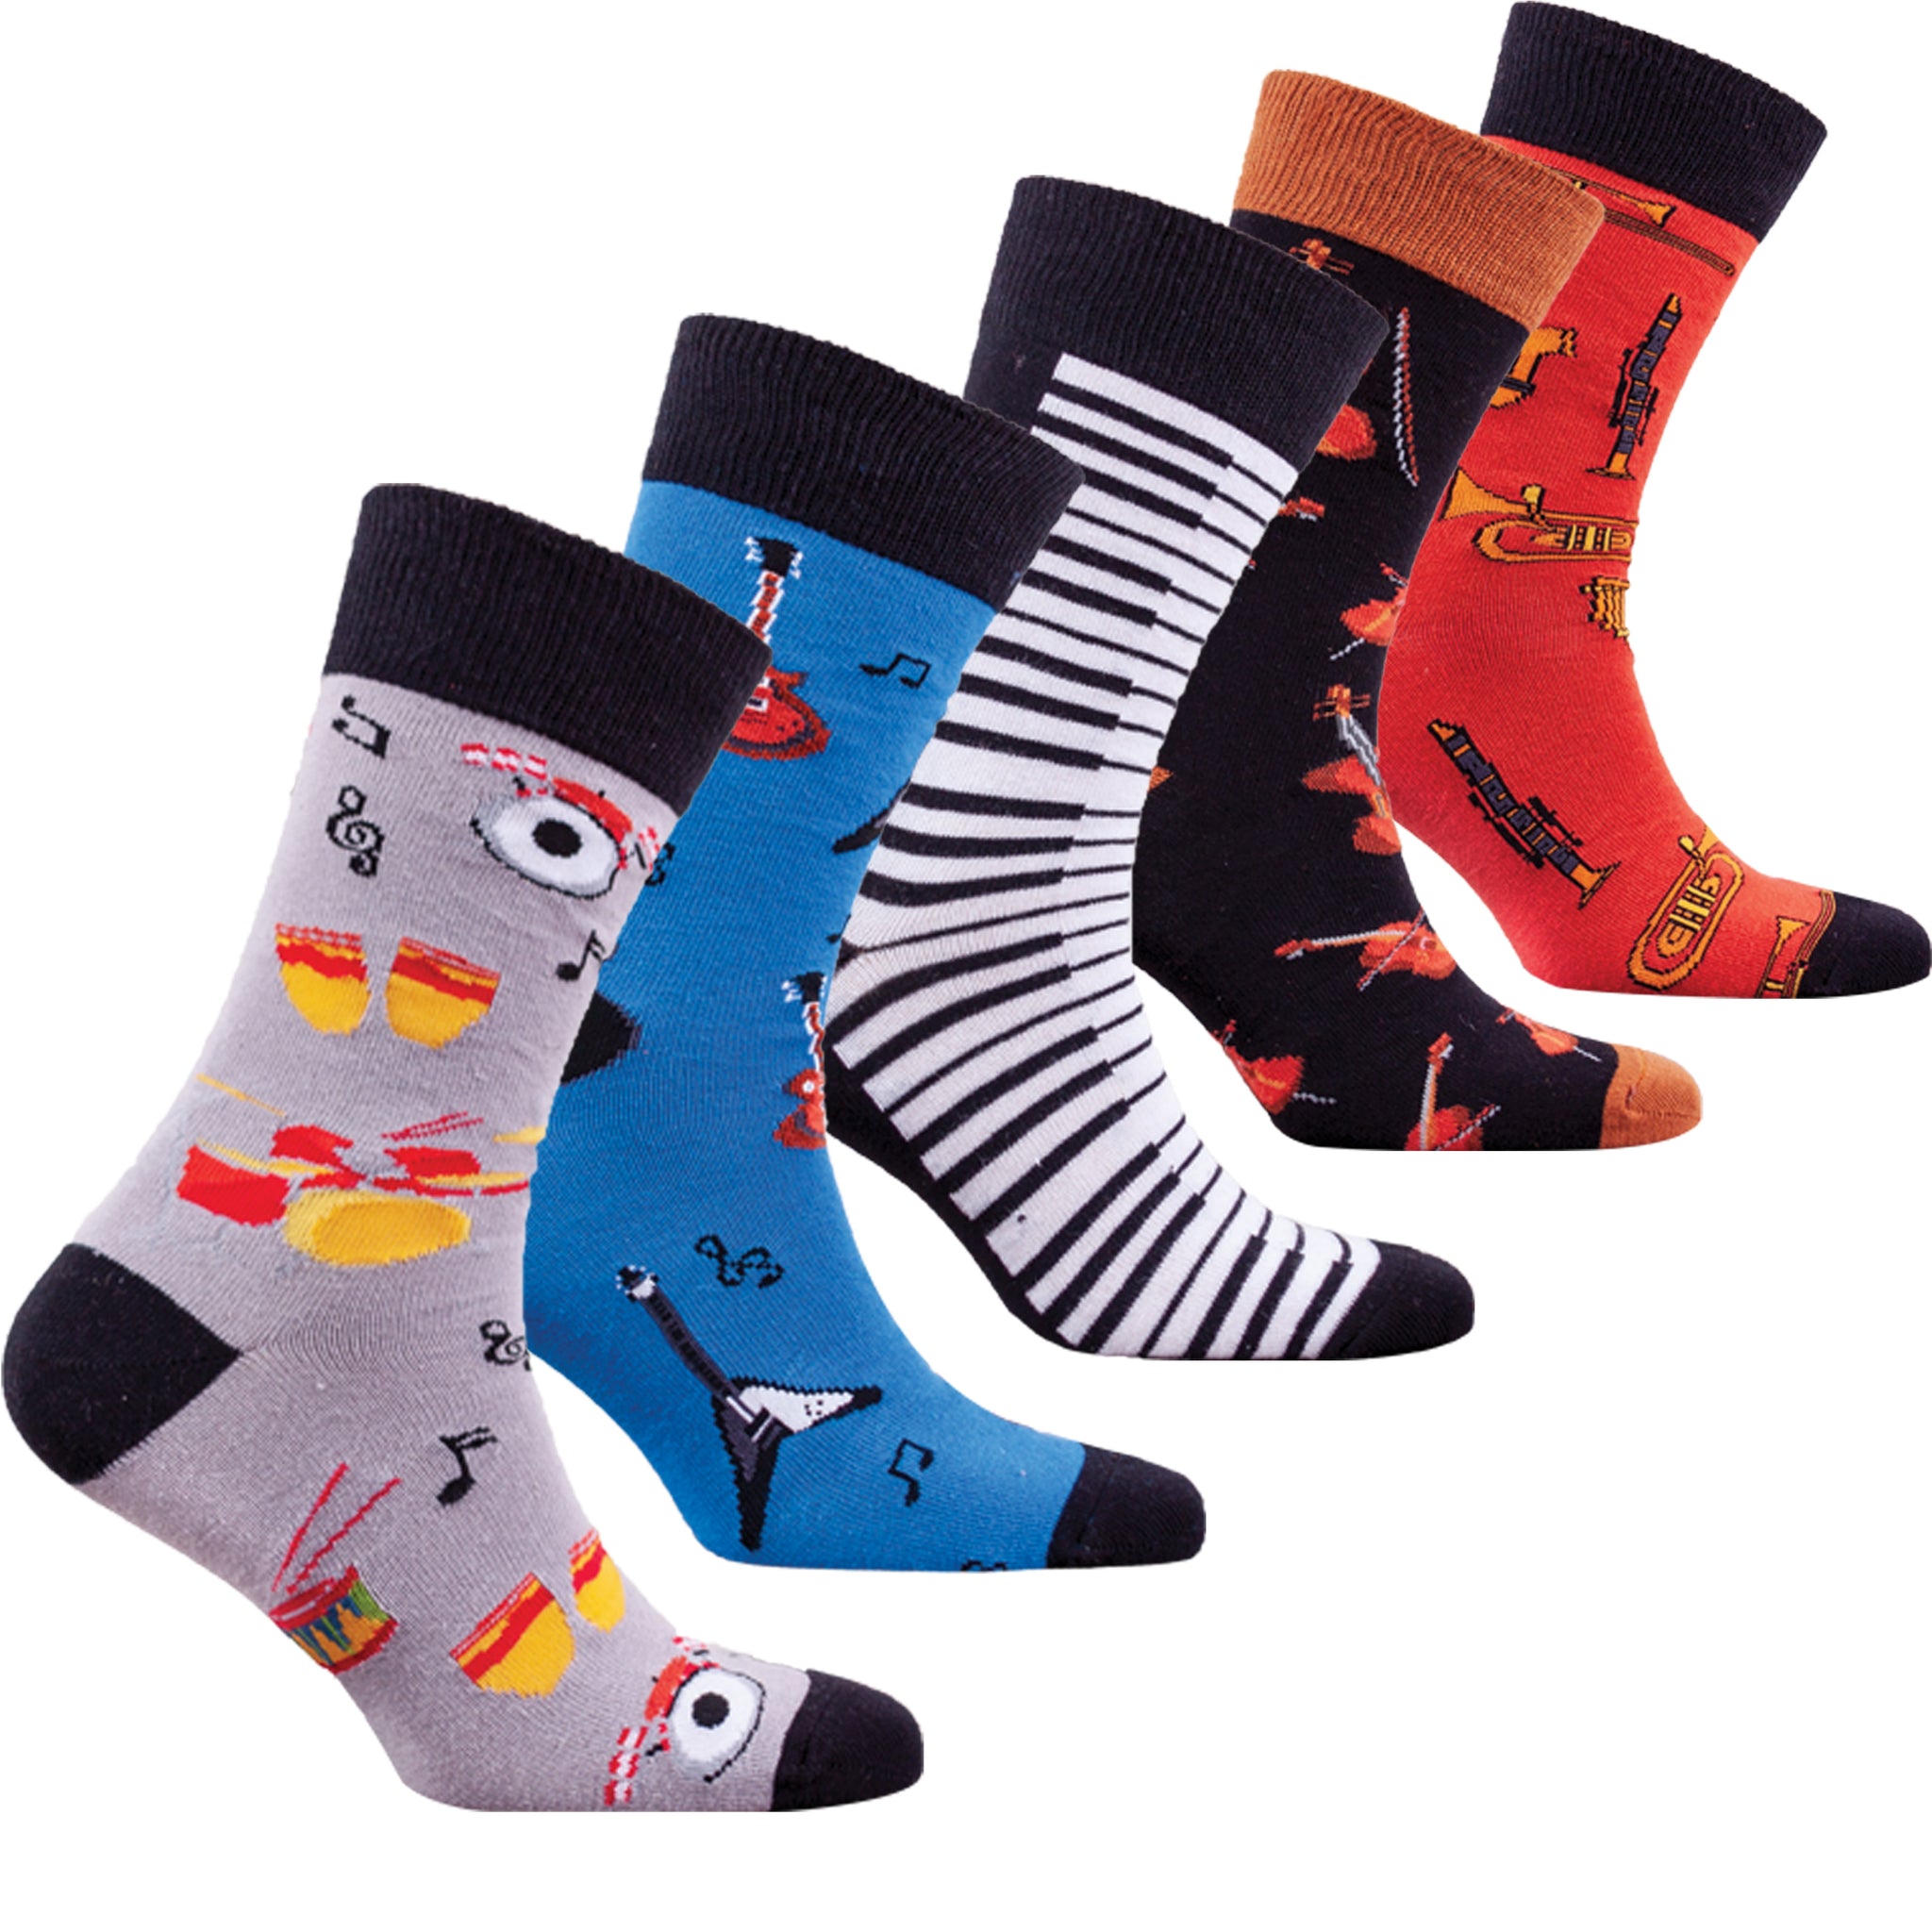 Men's Music Socks - Socks n Socks